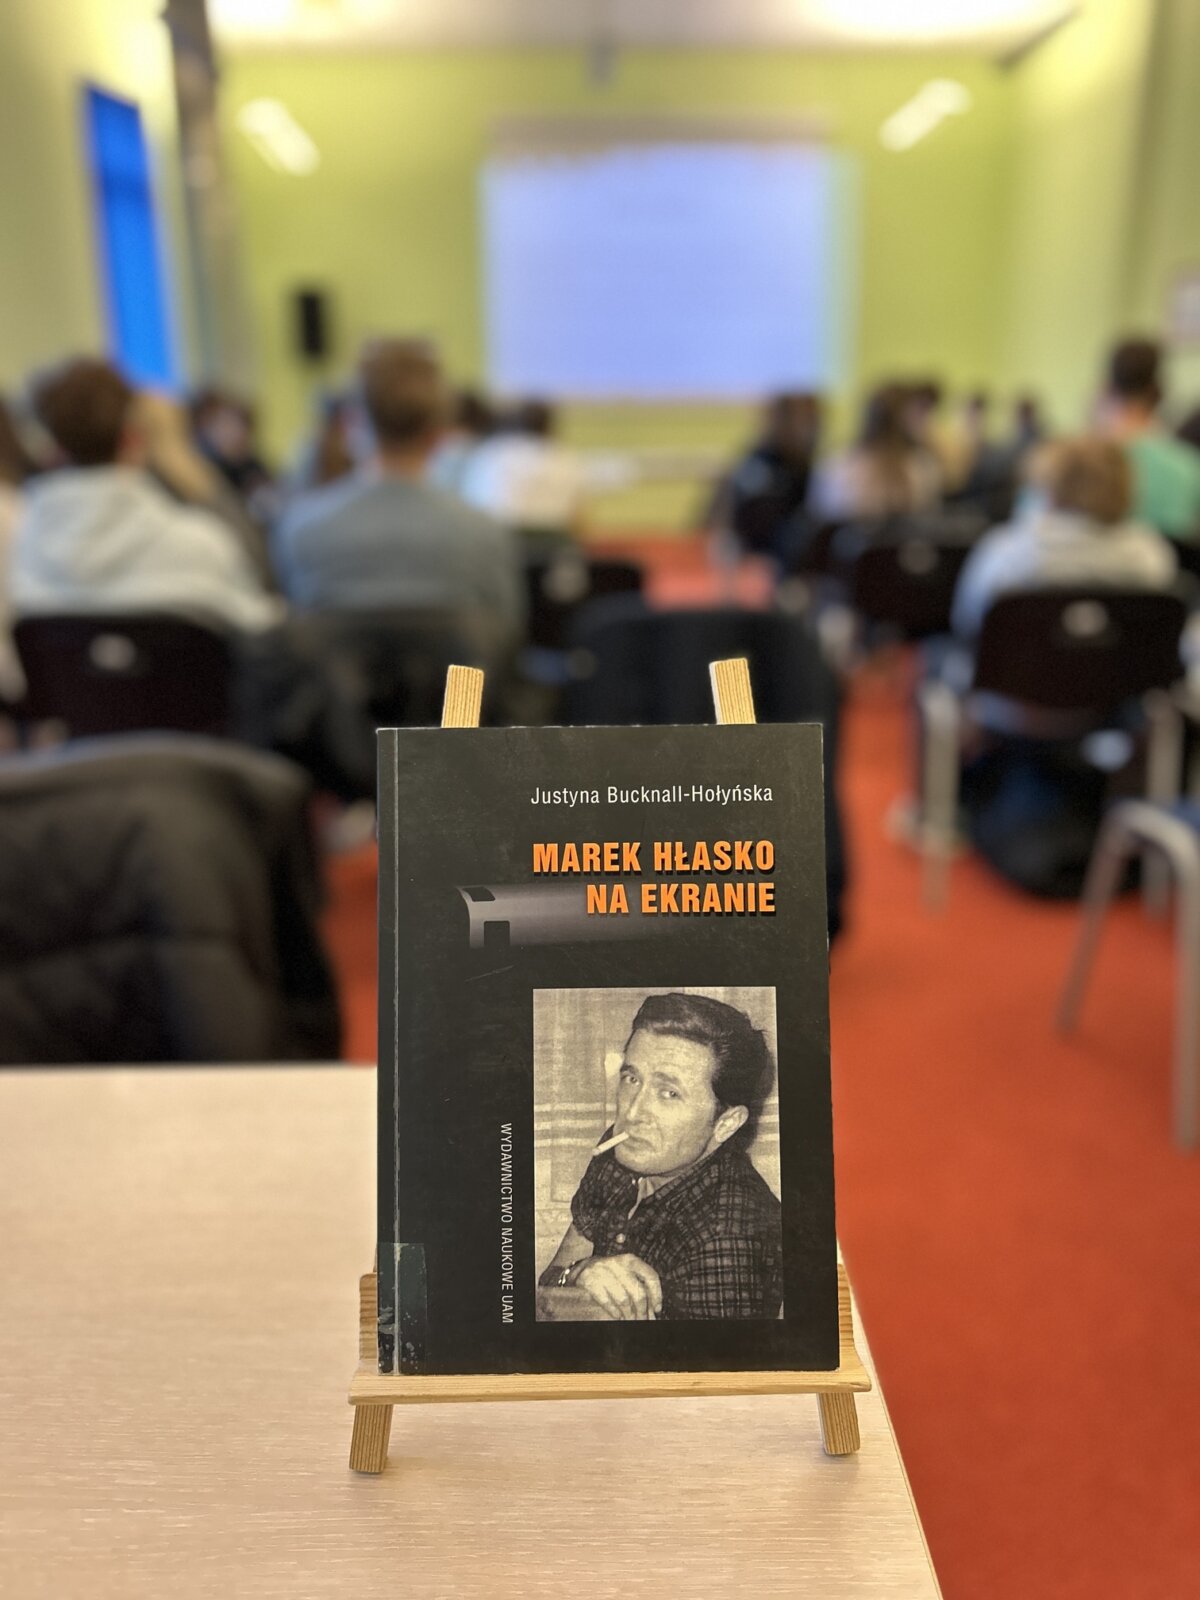 Na zdjęciu widać książkę „Marek Hłasko na ekranie” której autorką jest Justyna Bucknall-Hołyńska, jedna z prowadzących warsztaty.